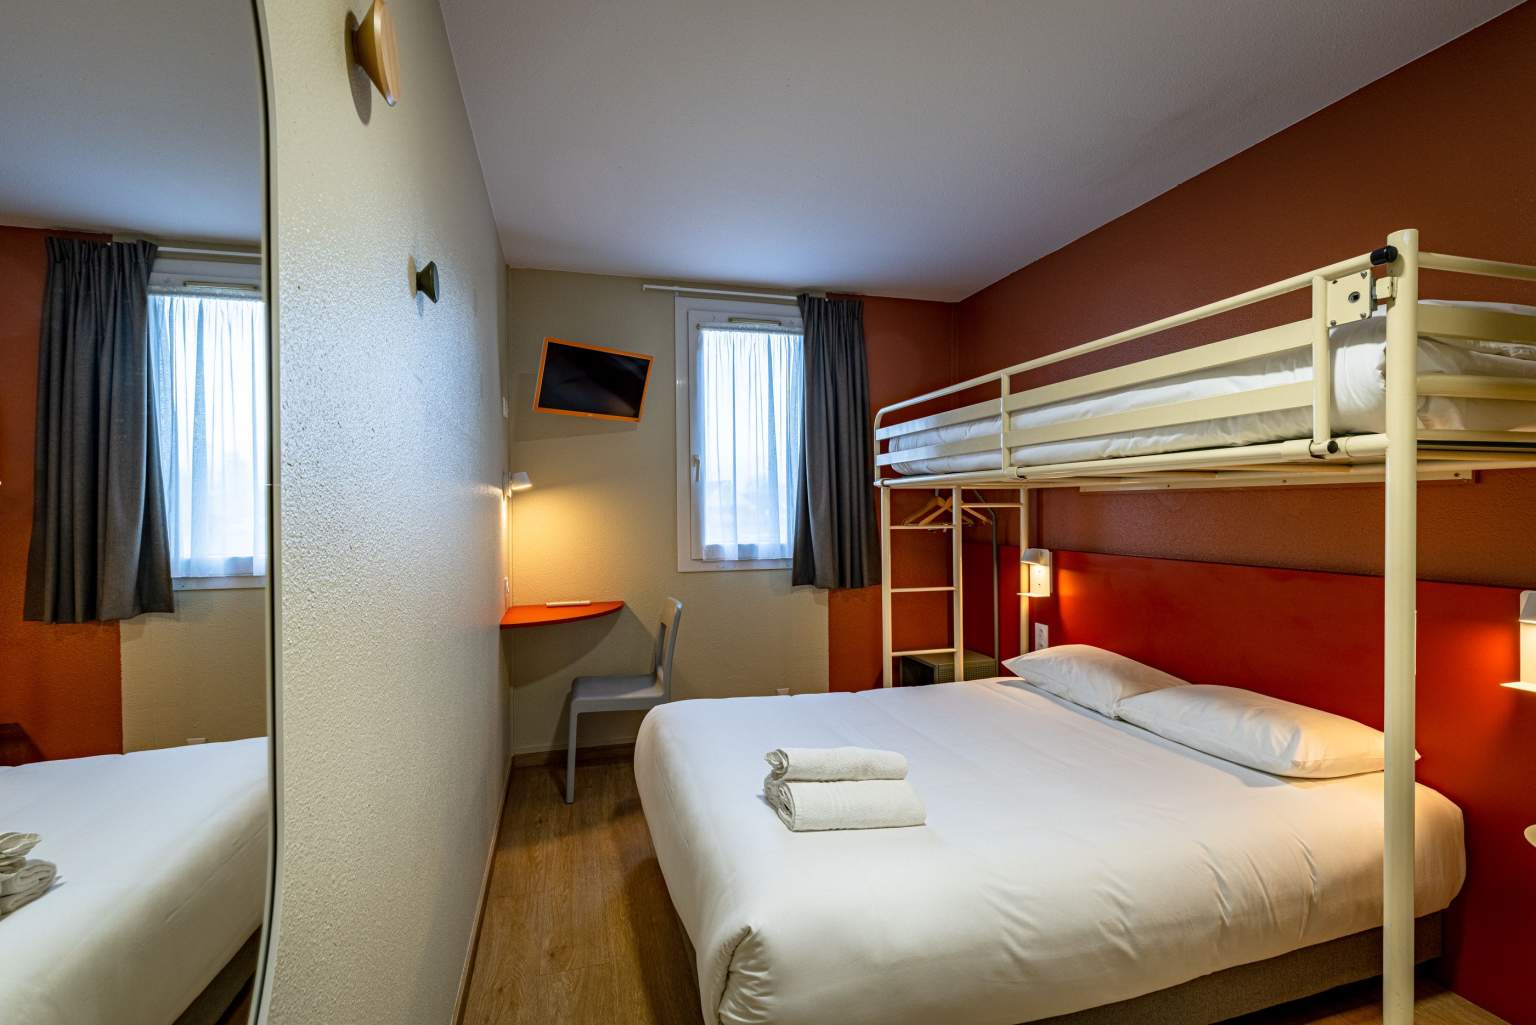 Dreibettzimmer VINI HOTEL in Beaune, preiswerte Hotel im Burgund